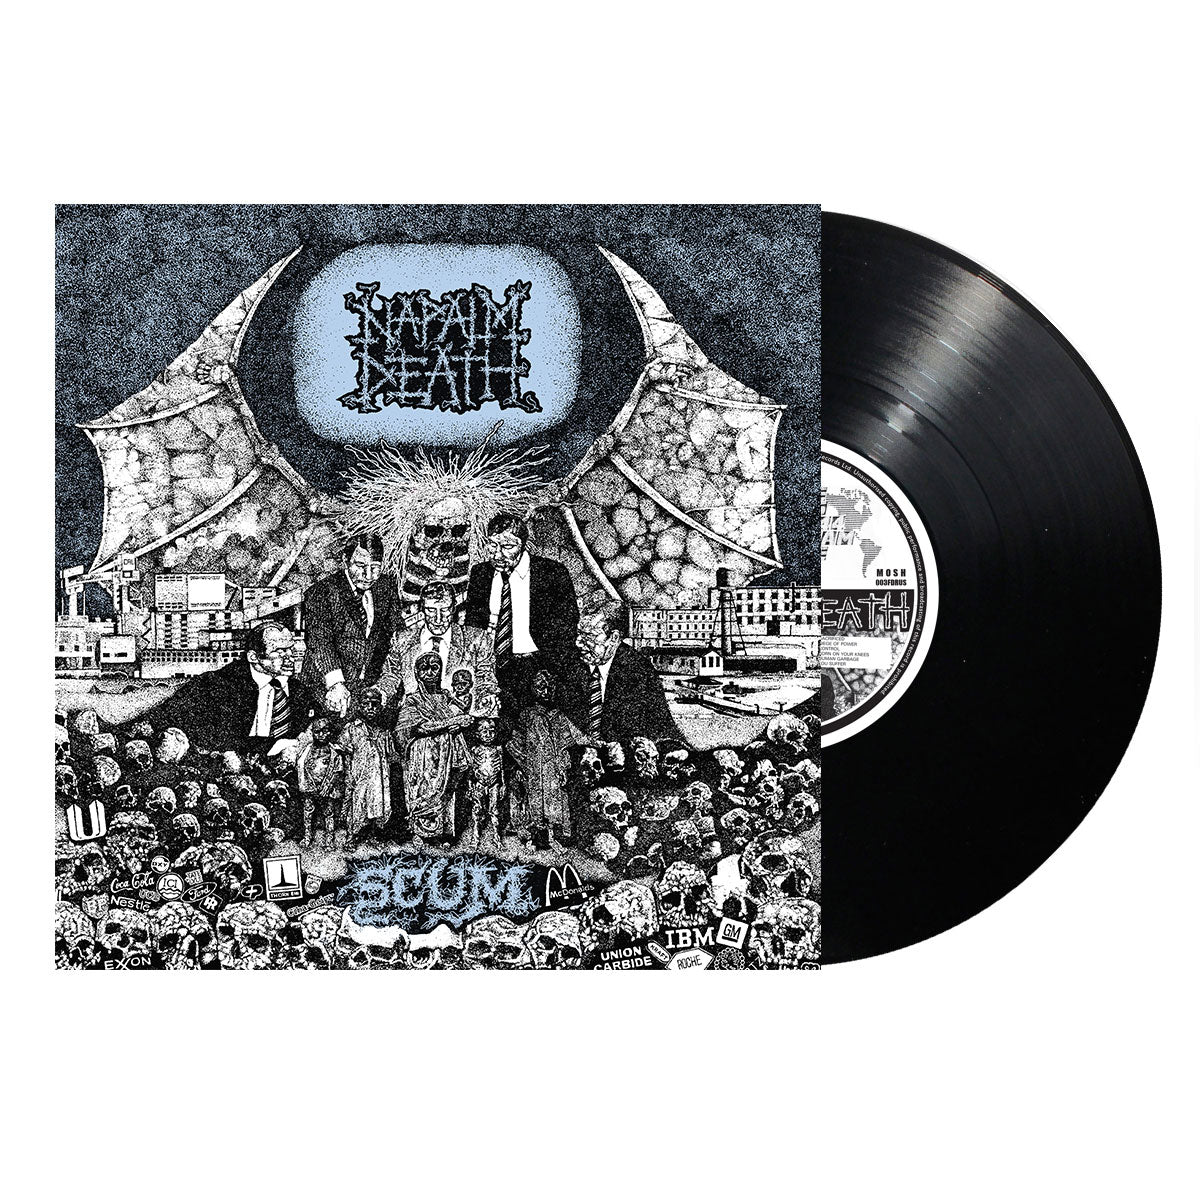 Napalm Death "Scum" FDR Black Vinyl w/ Blue Cover